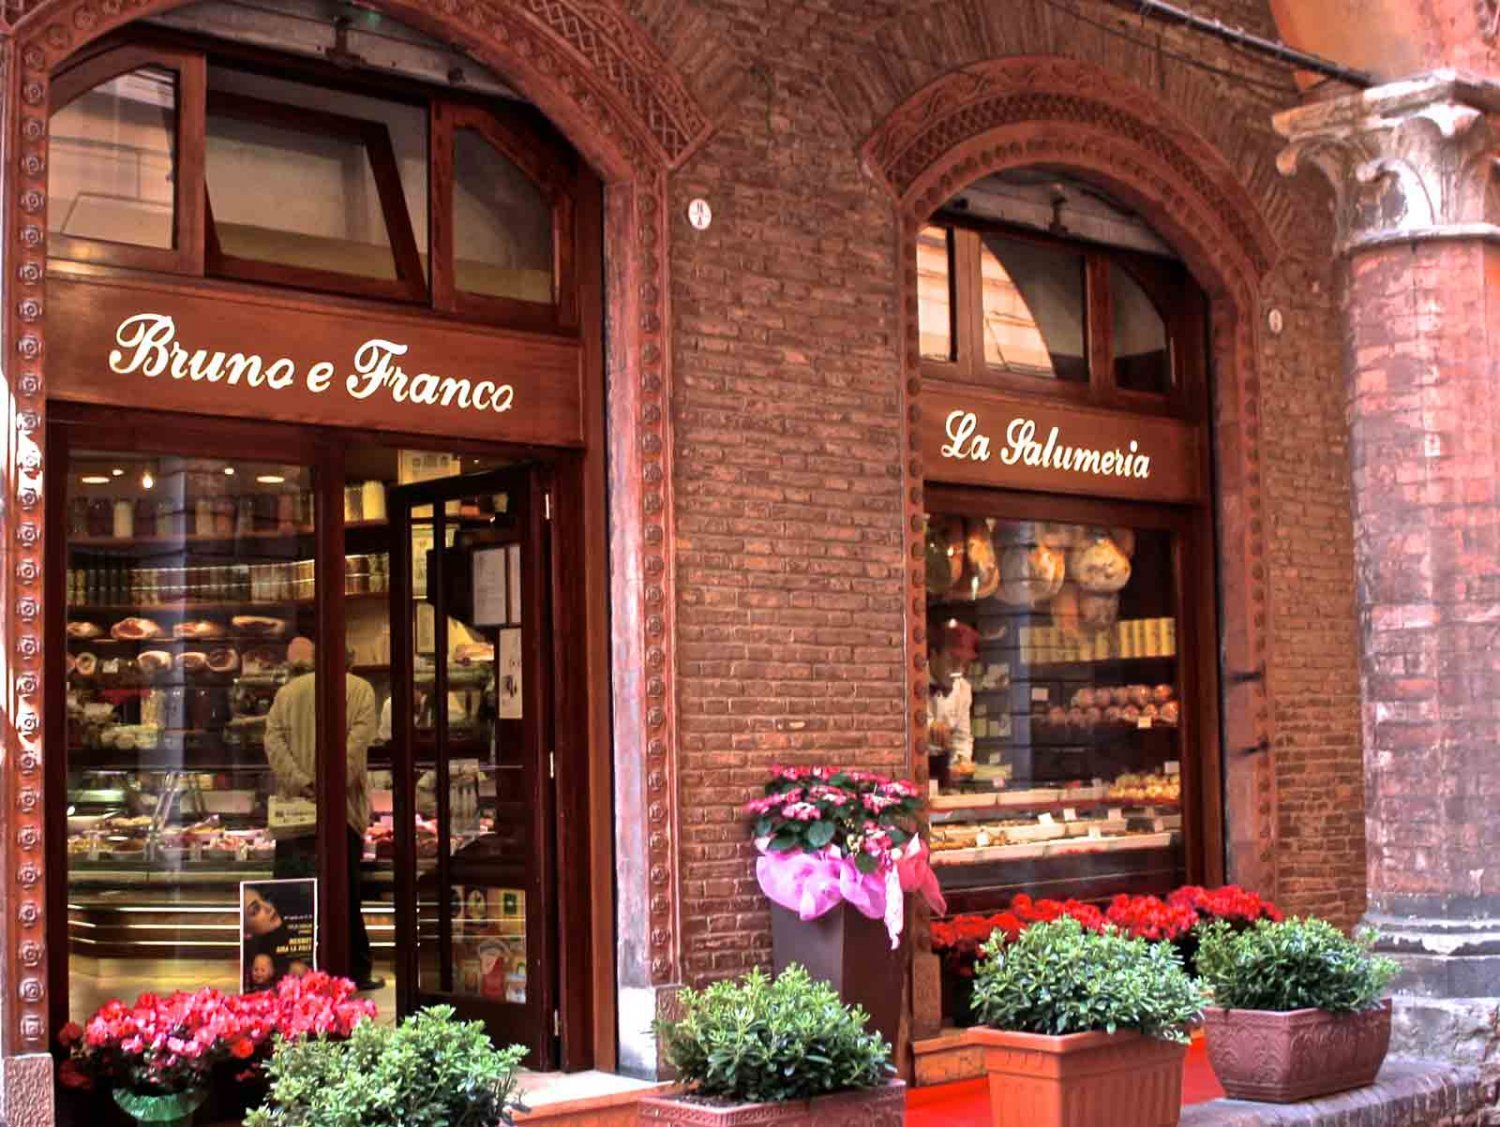 Продуктовые магазины в италии